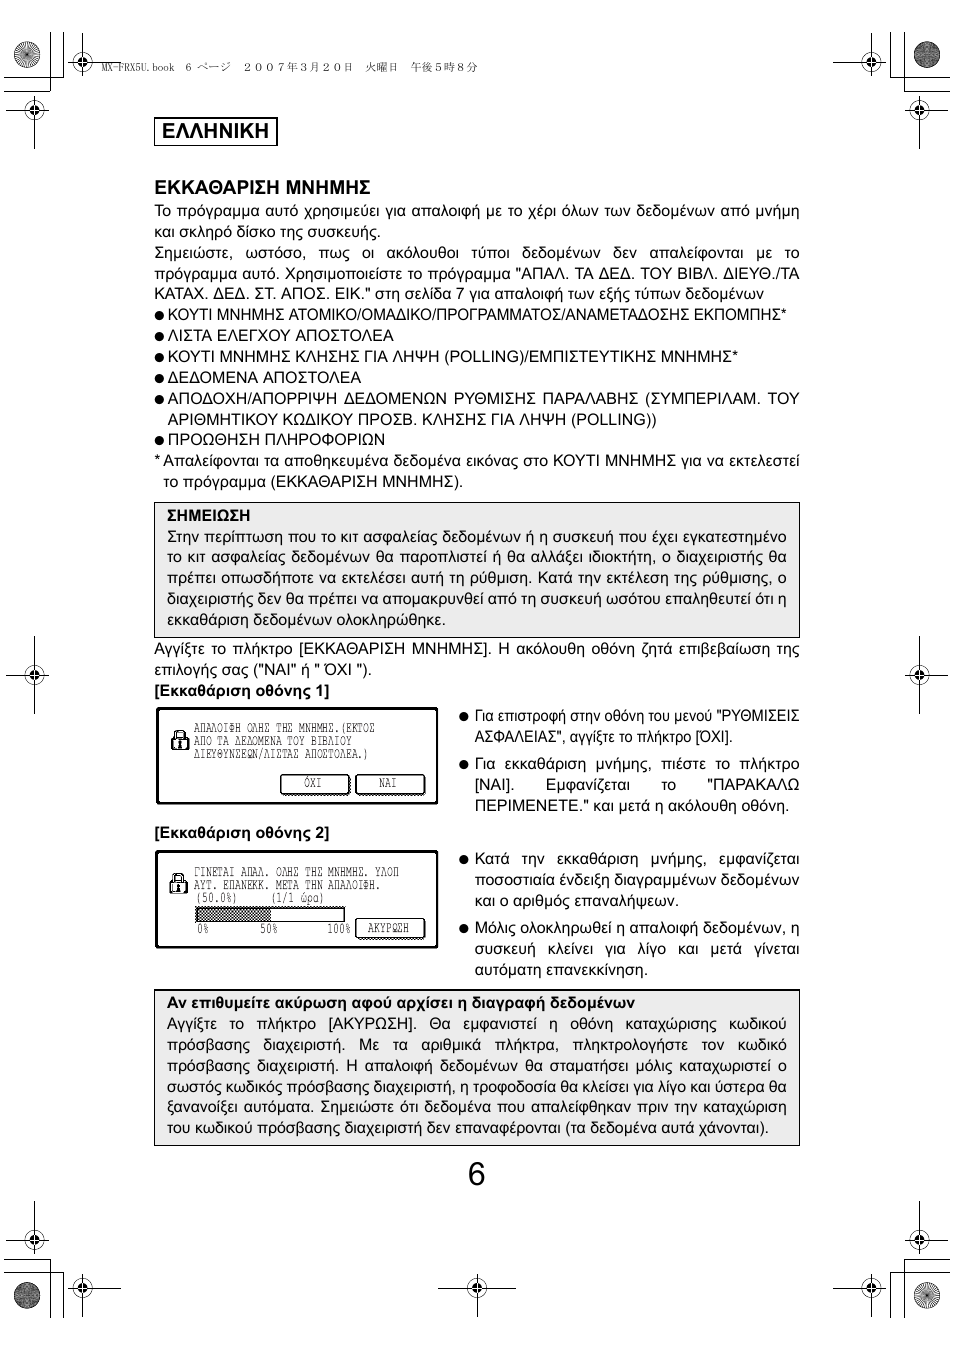 Ελληνικη, Εκκαθαριση μνημησ | Sharp Funkcja identyfikacji użytkownika User Manual | Page 128 / 184